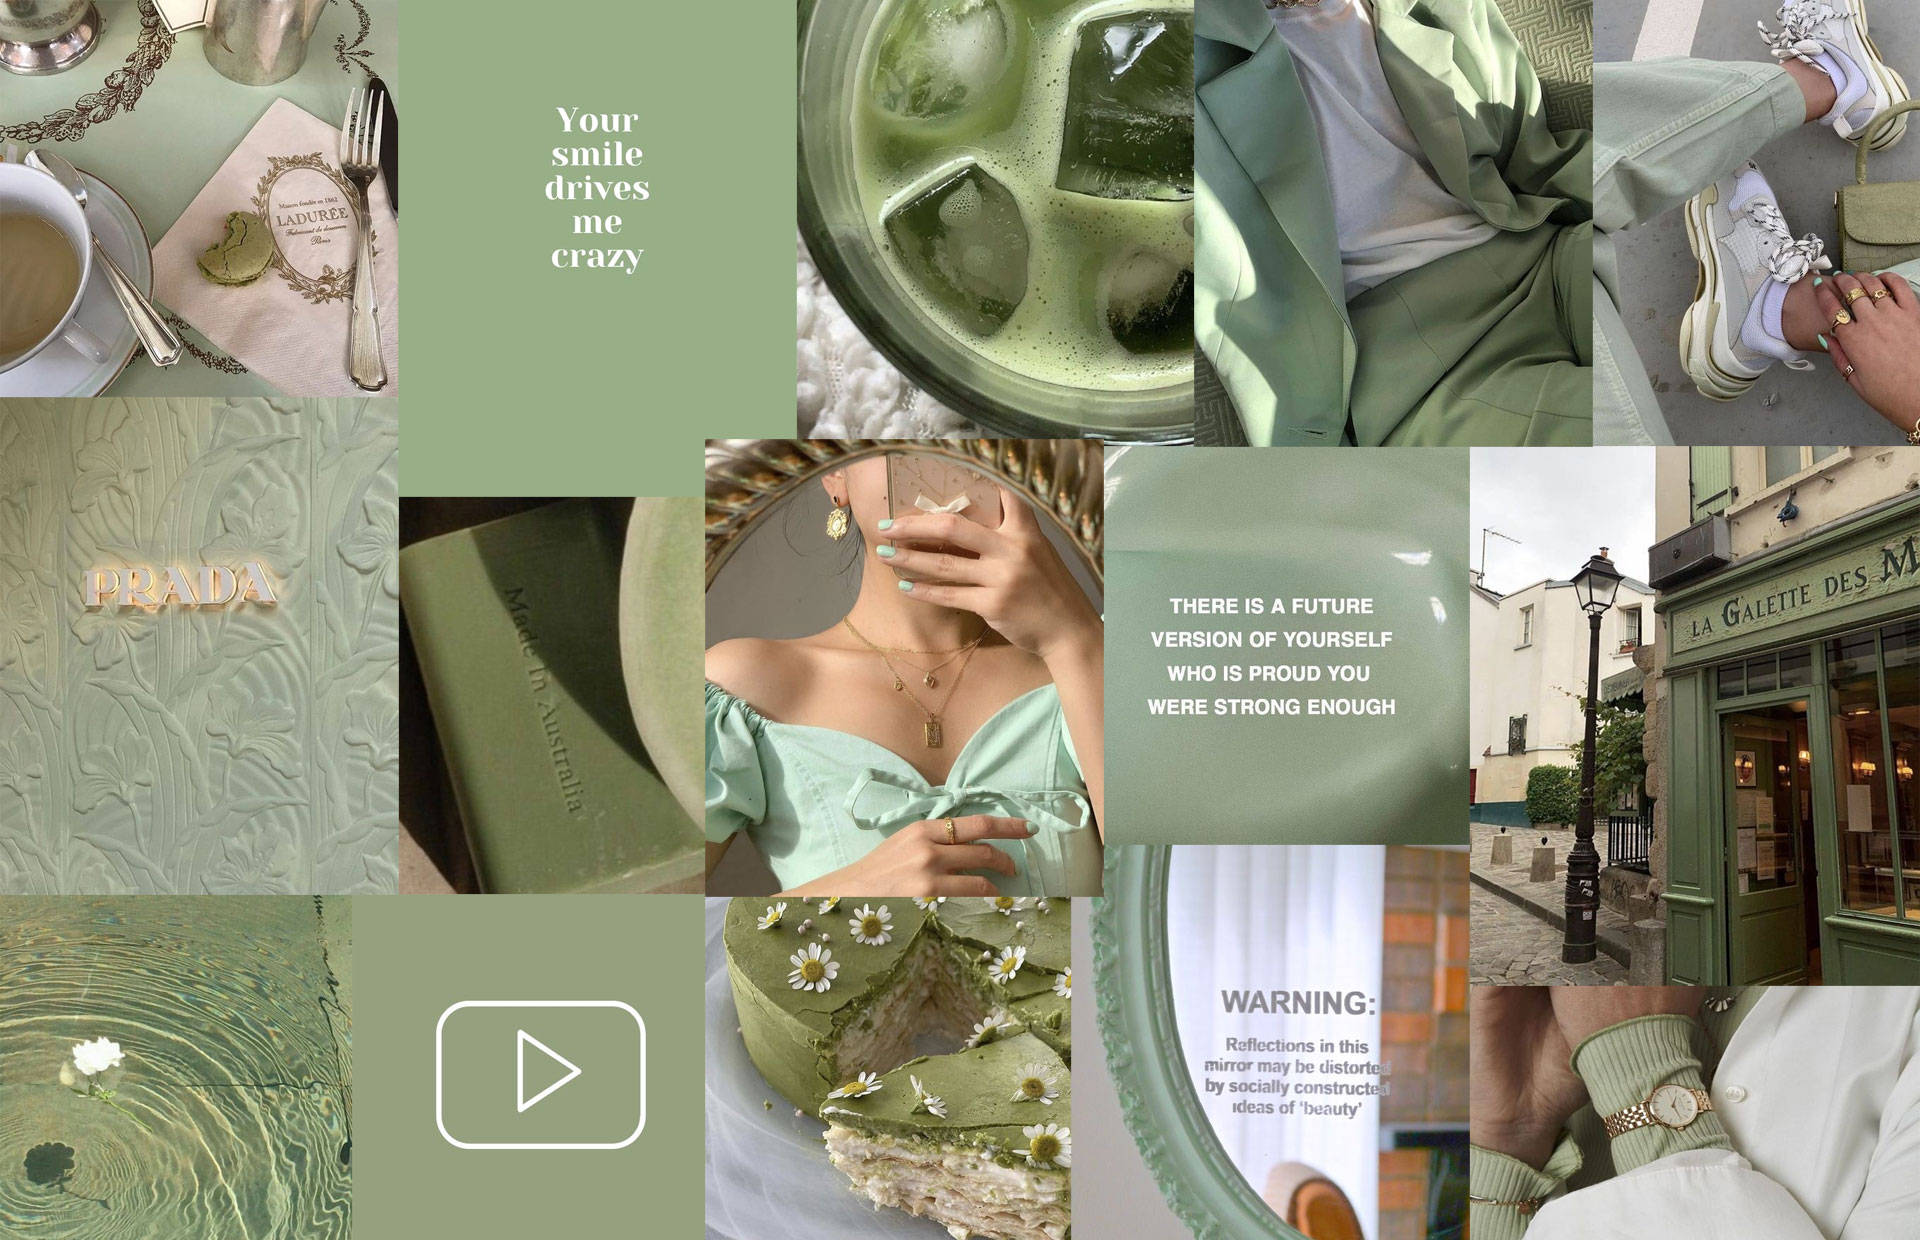 Einecollage Von Fotos Von Menschen In Grüner Kleidung Wallpaper